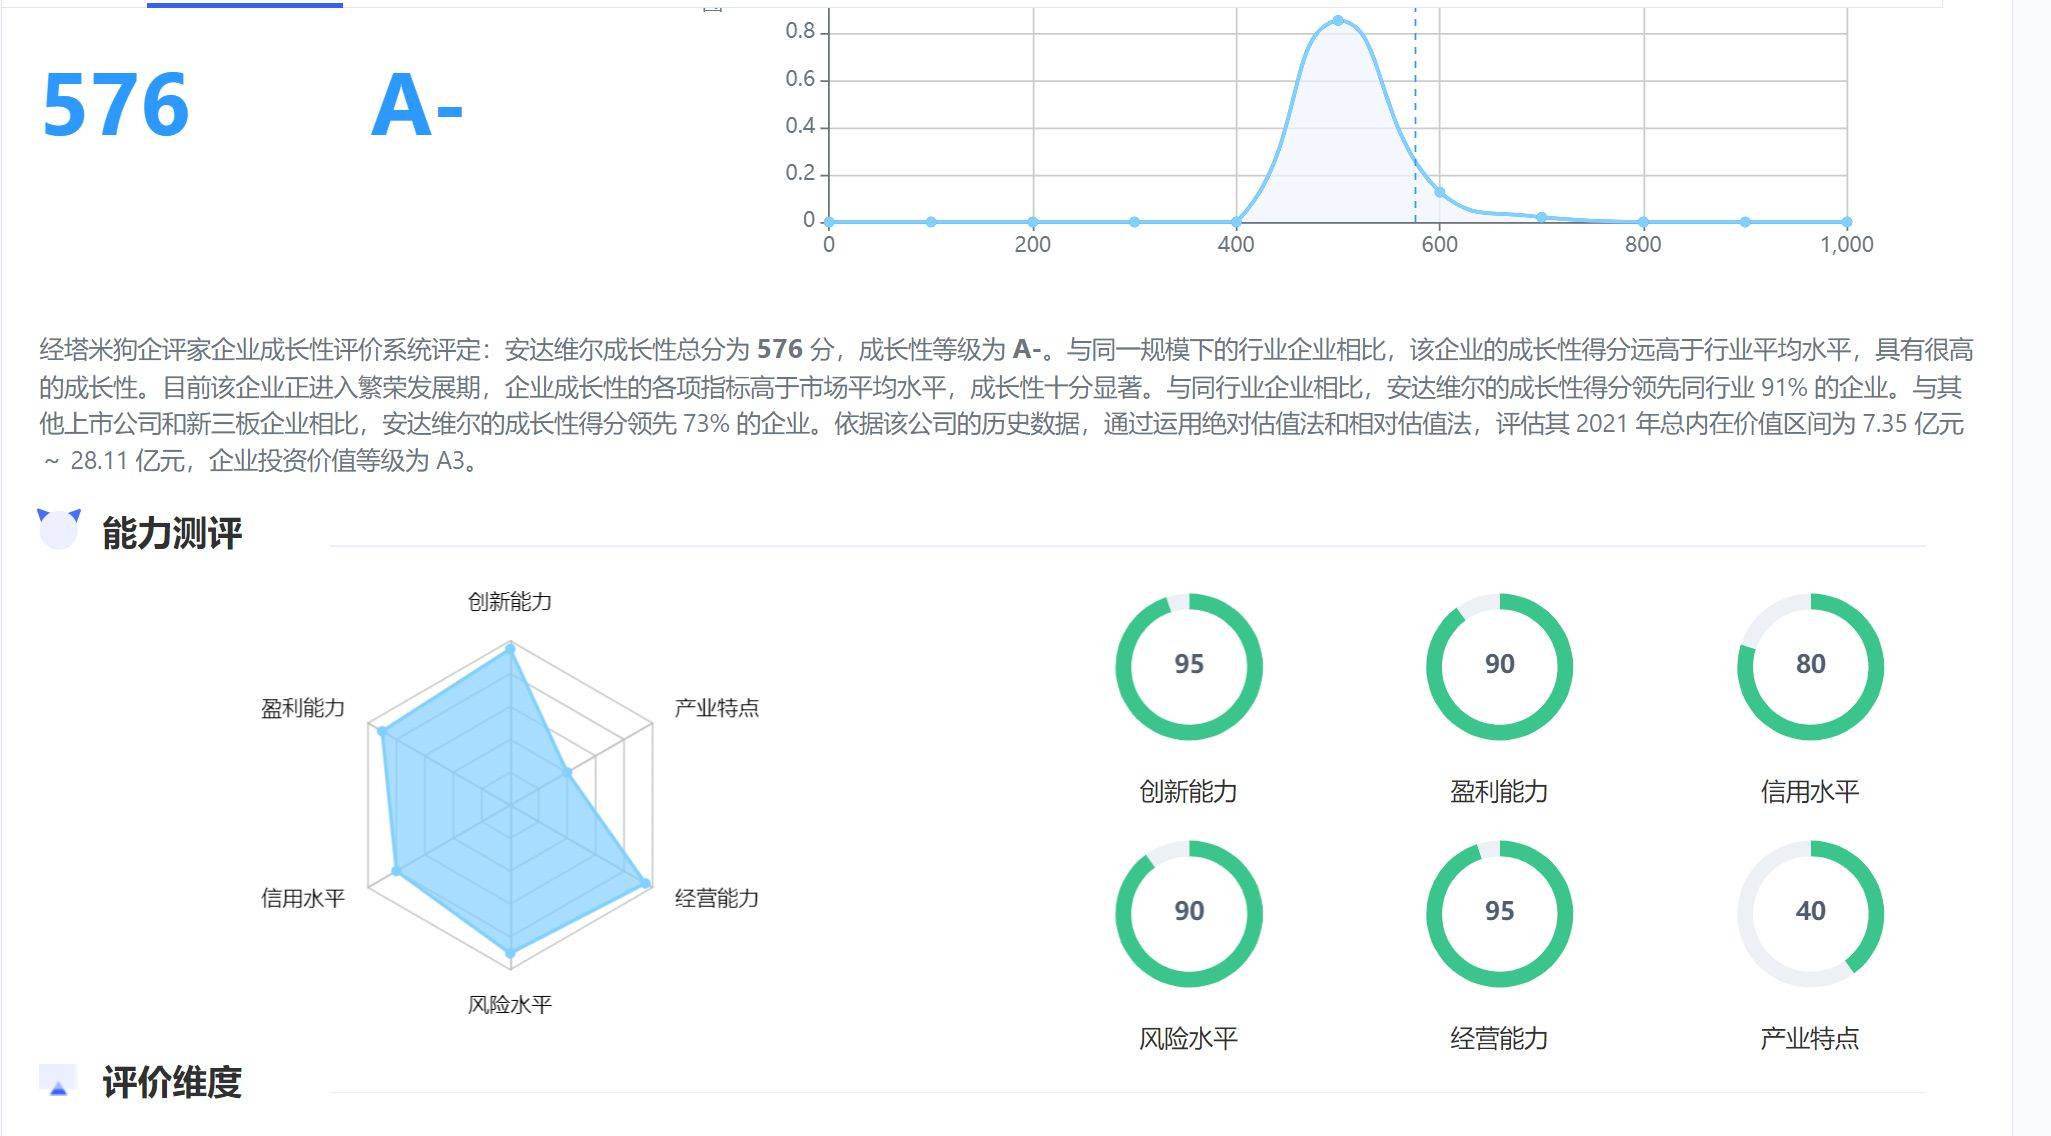 制造业北京安达维尔科技股份有限公司企业成长性分析